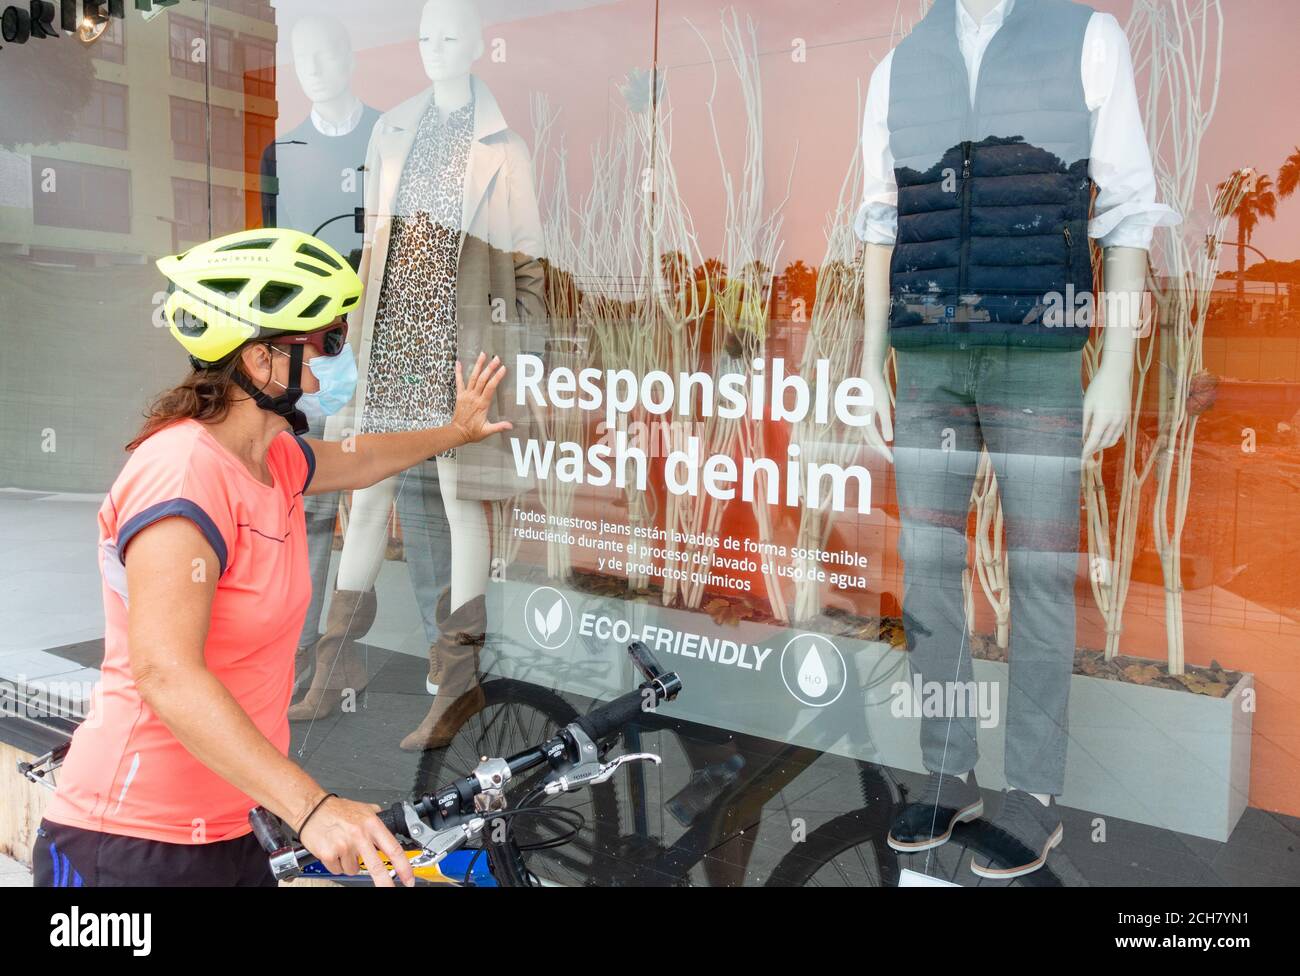 Radfahrerin trägt Gesichtsmaske suchen im Schaufenster mit verantwortungsvollen Wash Denim Aufkleber auf dem Fenster. Schaufensterbummel, umweltfreundliche Kleidung Stockfoto